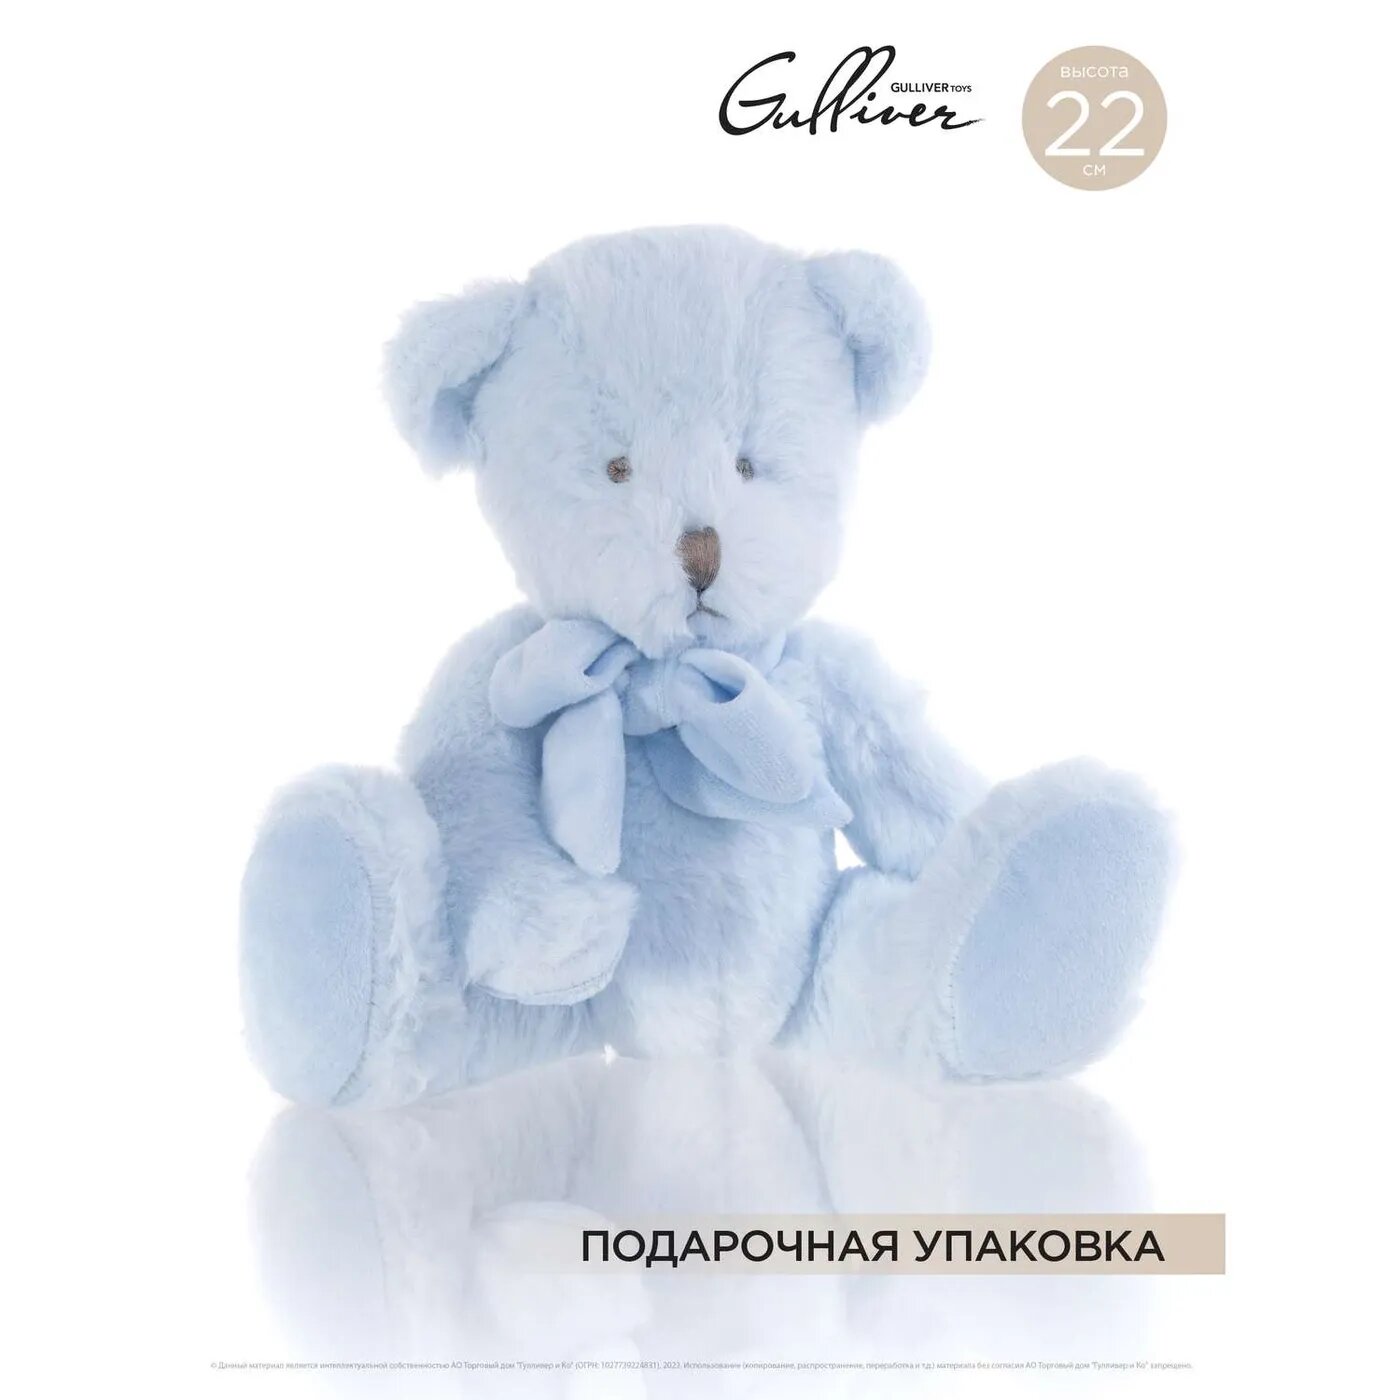 Мягкая игрушка Gulliver Мишка голубой сидячий с бантом 22 см Gulliver мягкая игрушка - фото №4